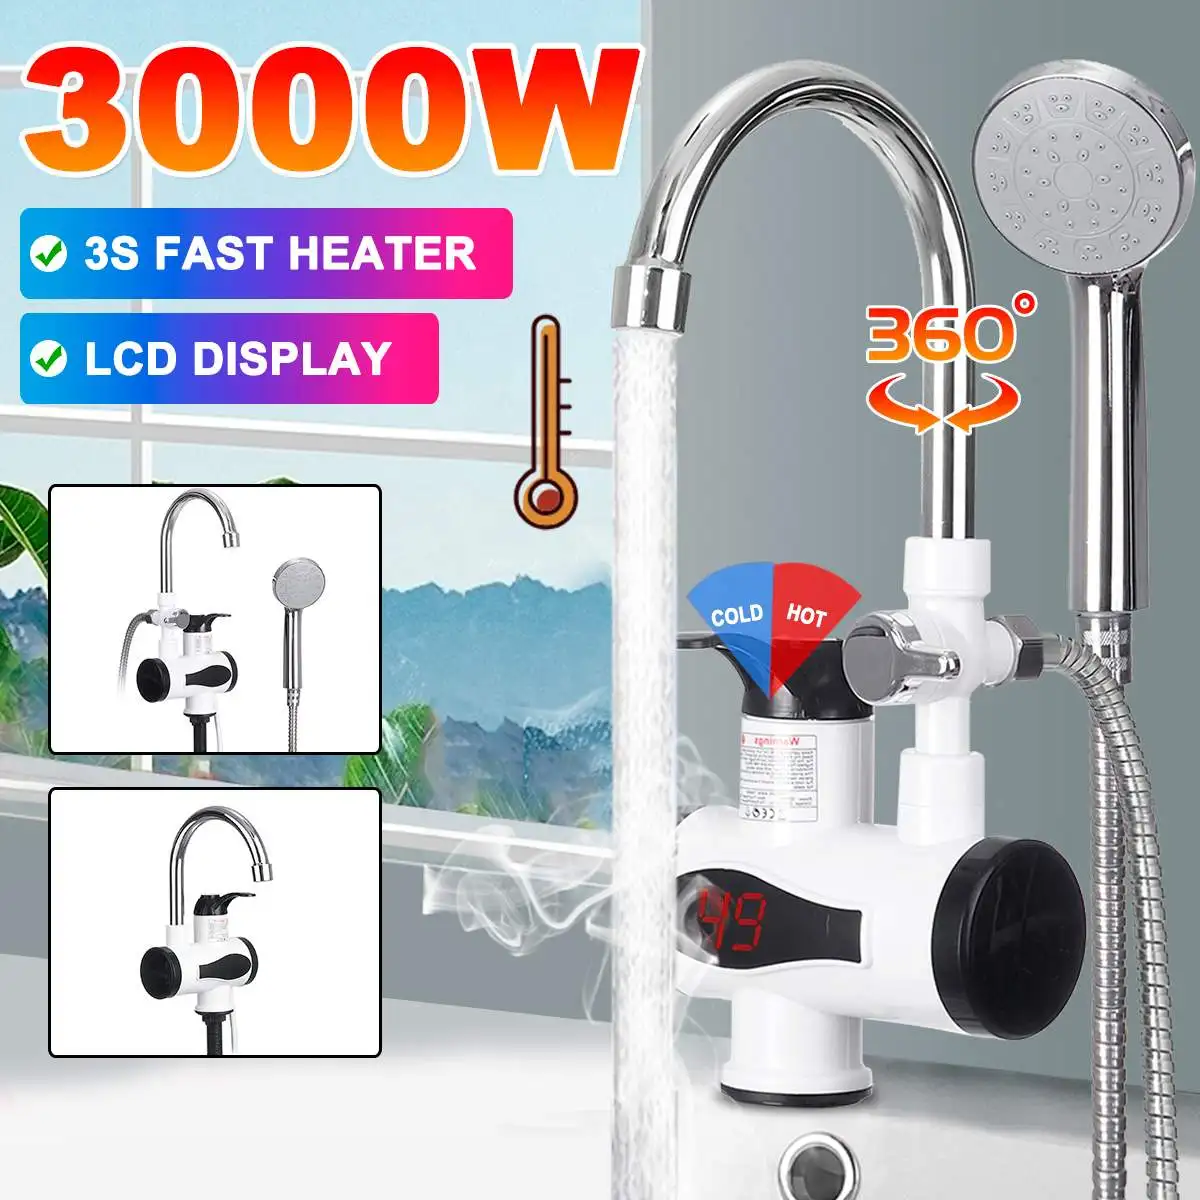 Calentador de agua eléctrico para cocina, grifo de cocina de 220V con enchufe europeo y estadounidense, pantalla Digital de 3000W, acero inoxidable 304